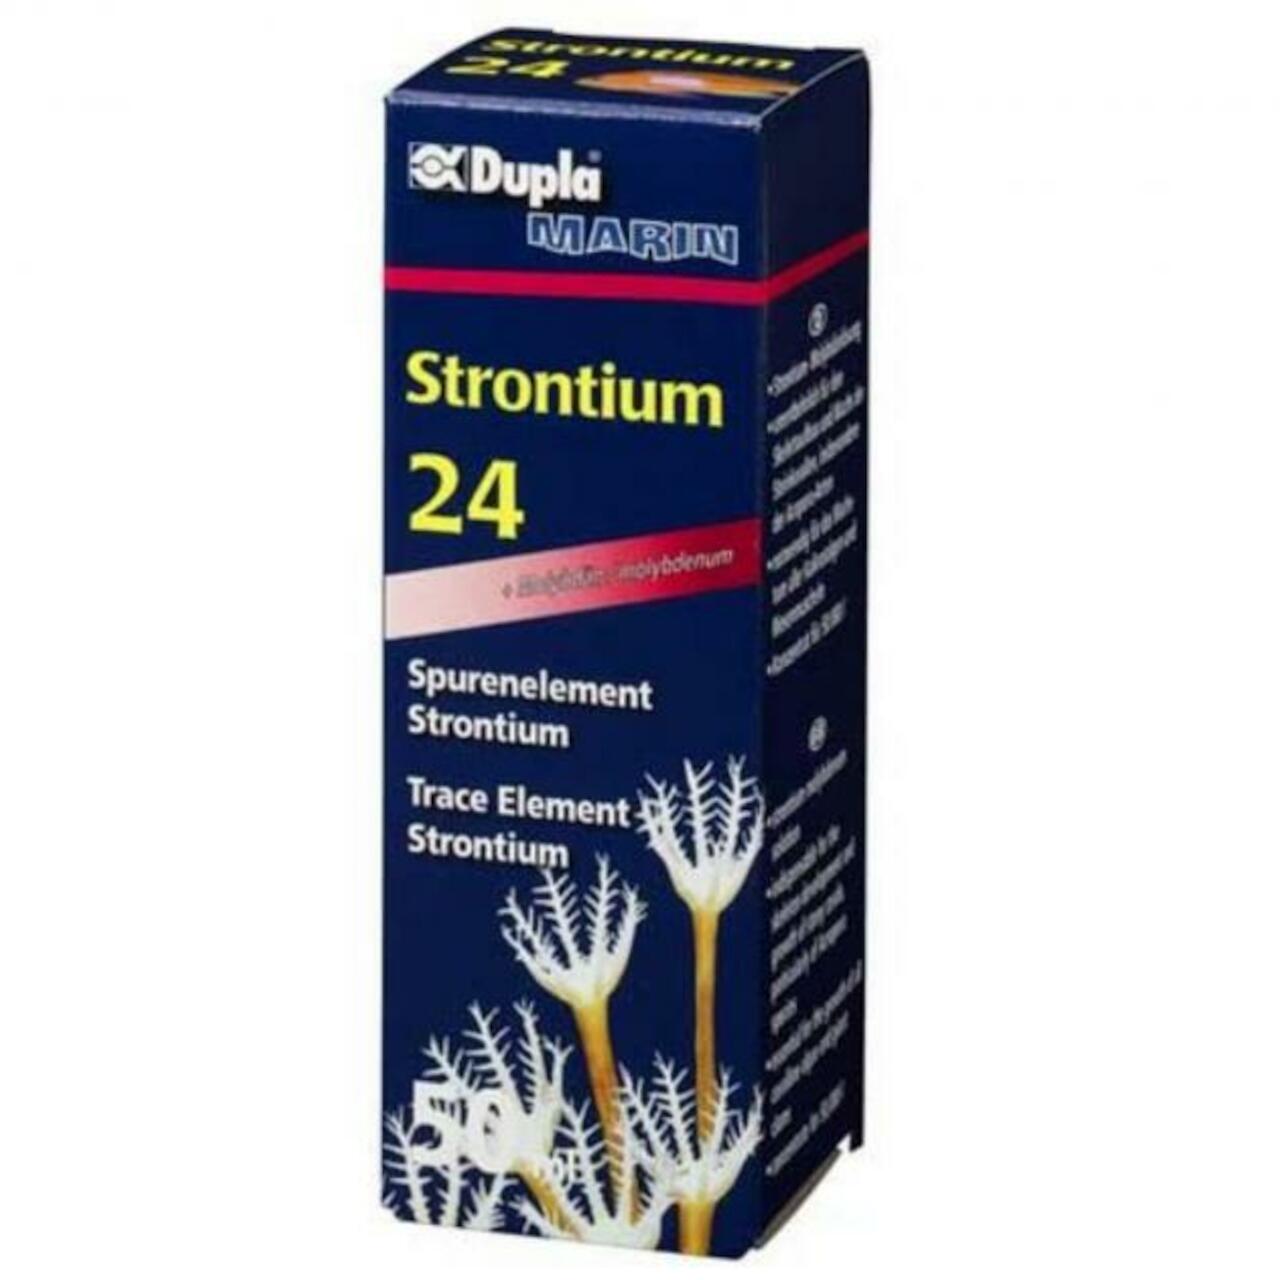 Dupla Marin Strontium 24